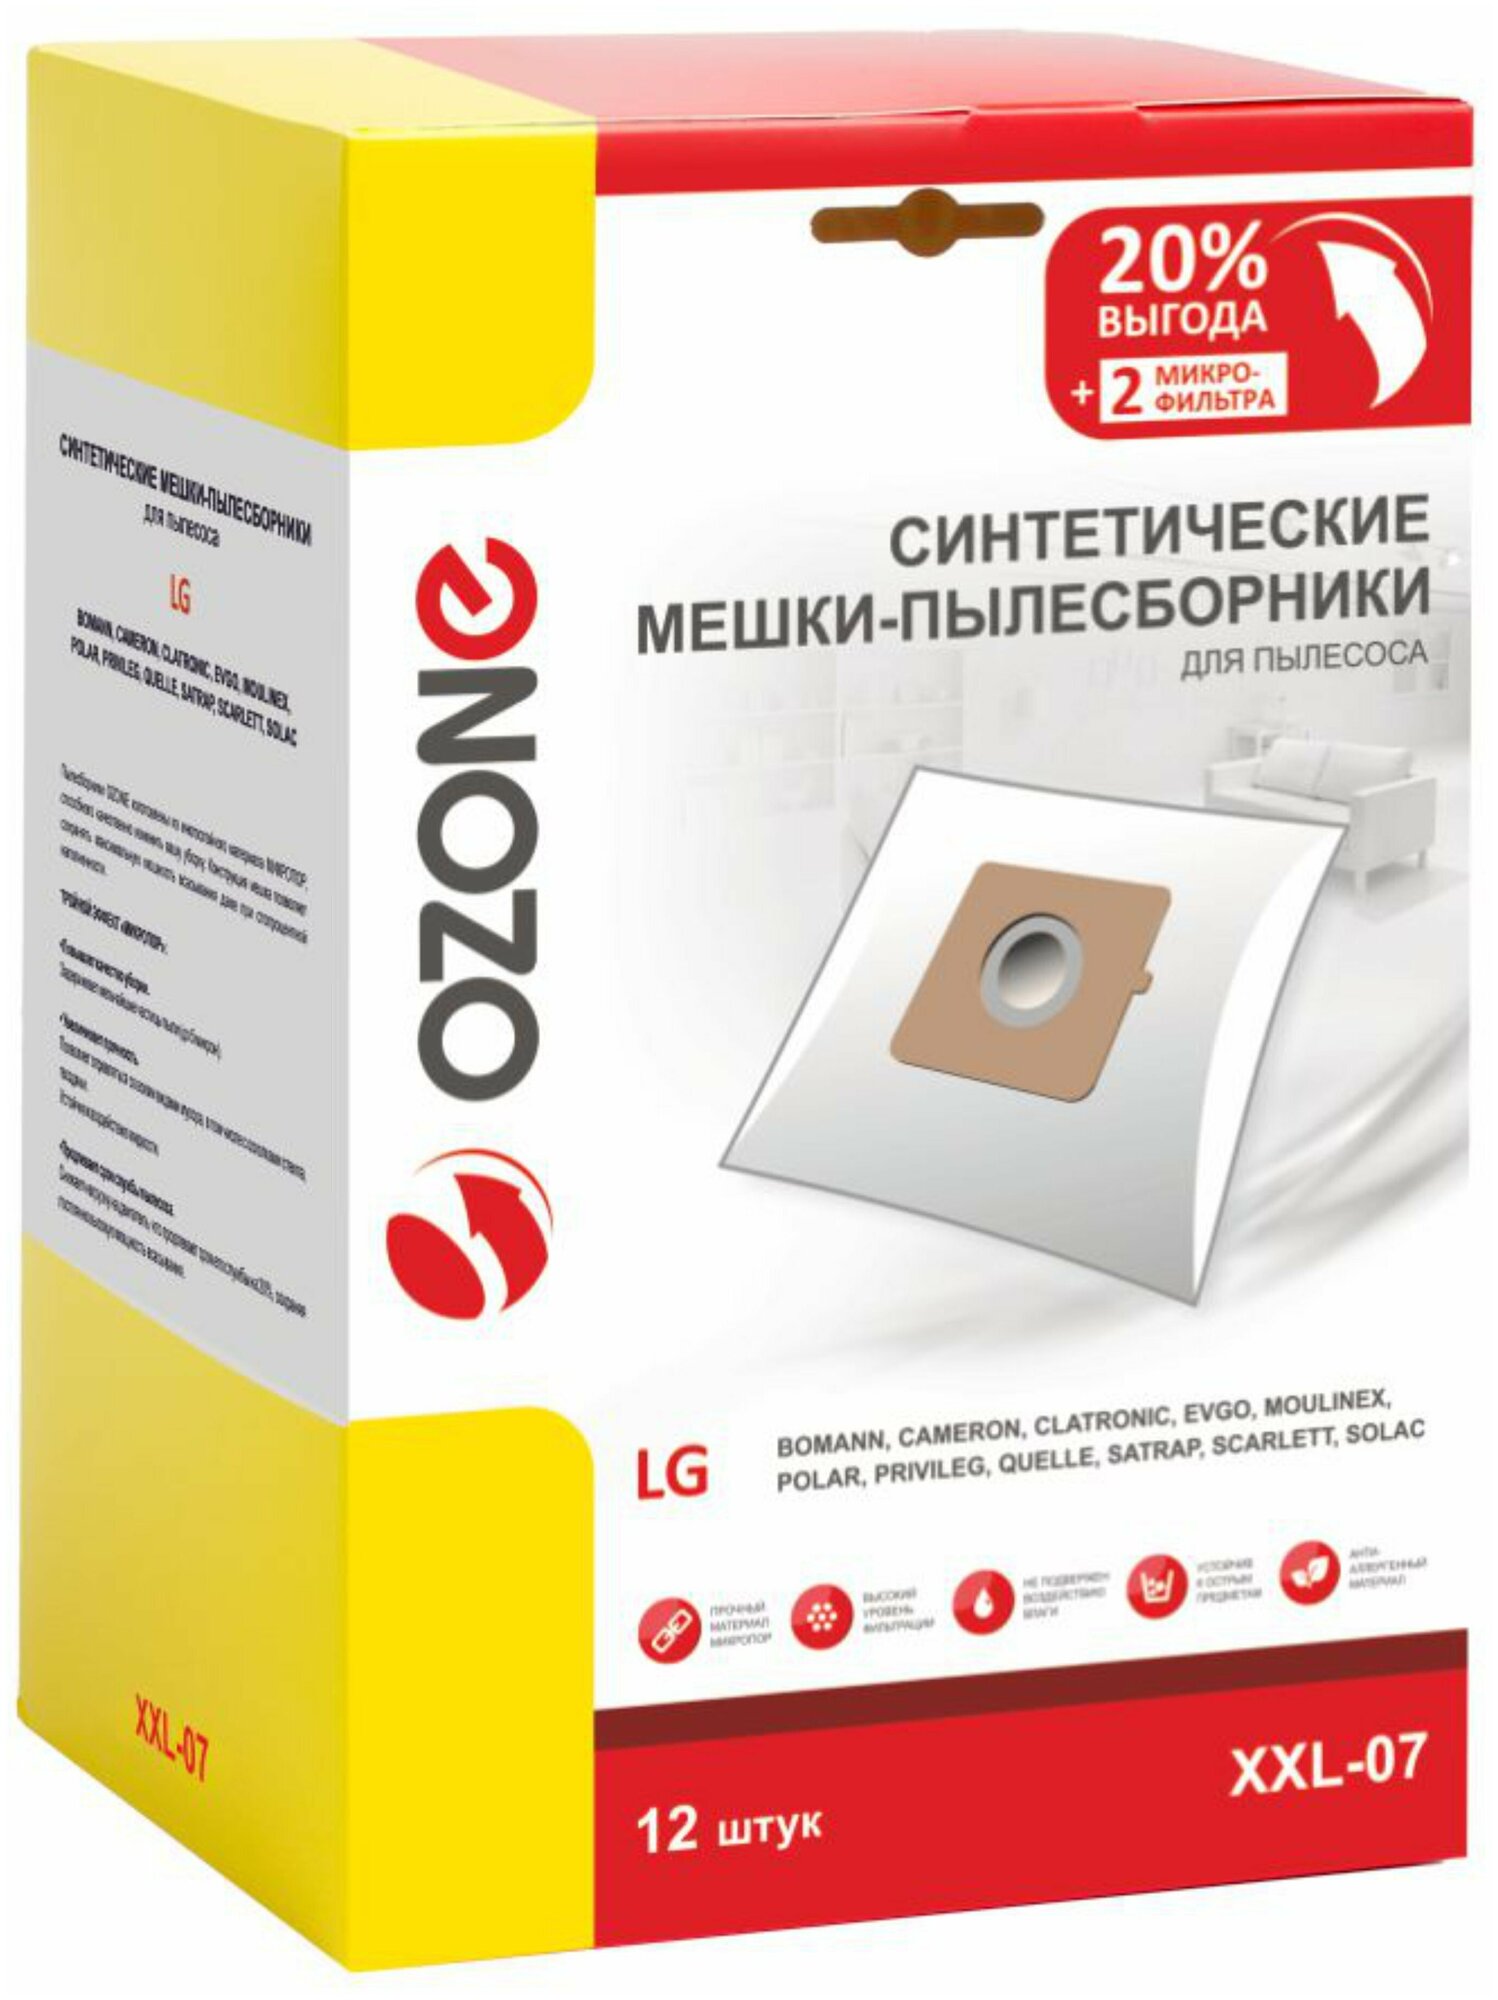 Мешки-пылесборники Ozone синтетические 12 шт + 2 микрофильтра для LG EVGO POLAR и др.